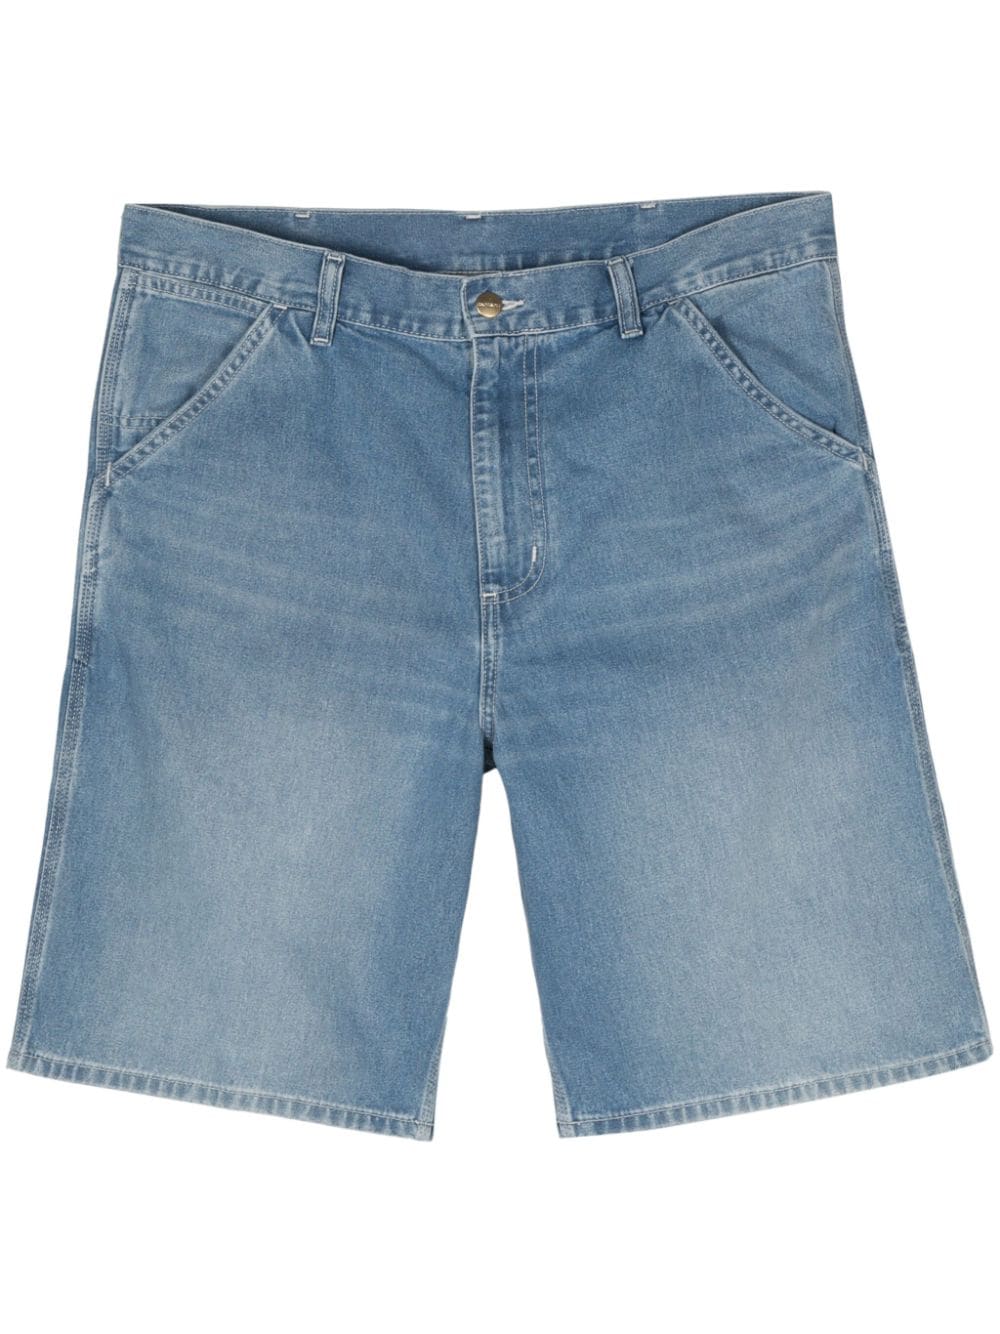 Simple denim shorts